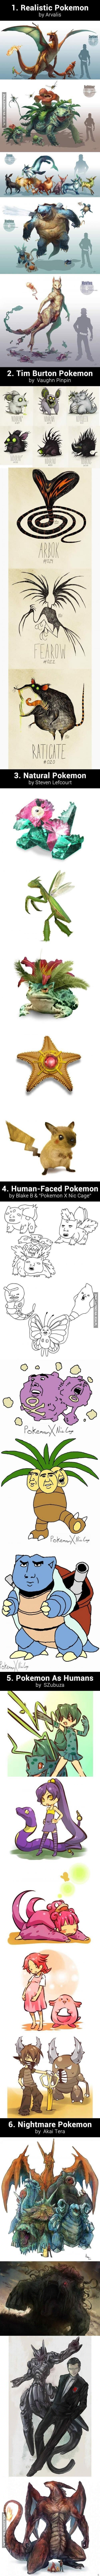 Własne interpretacje Pokemonów